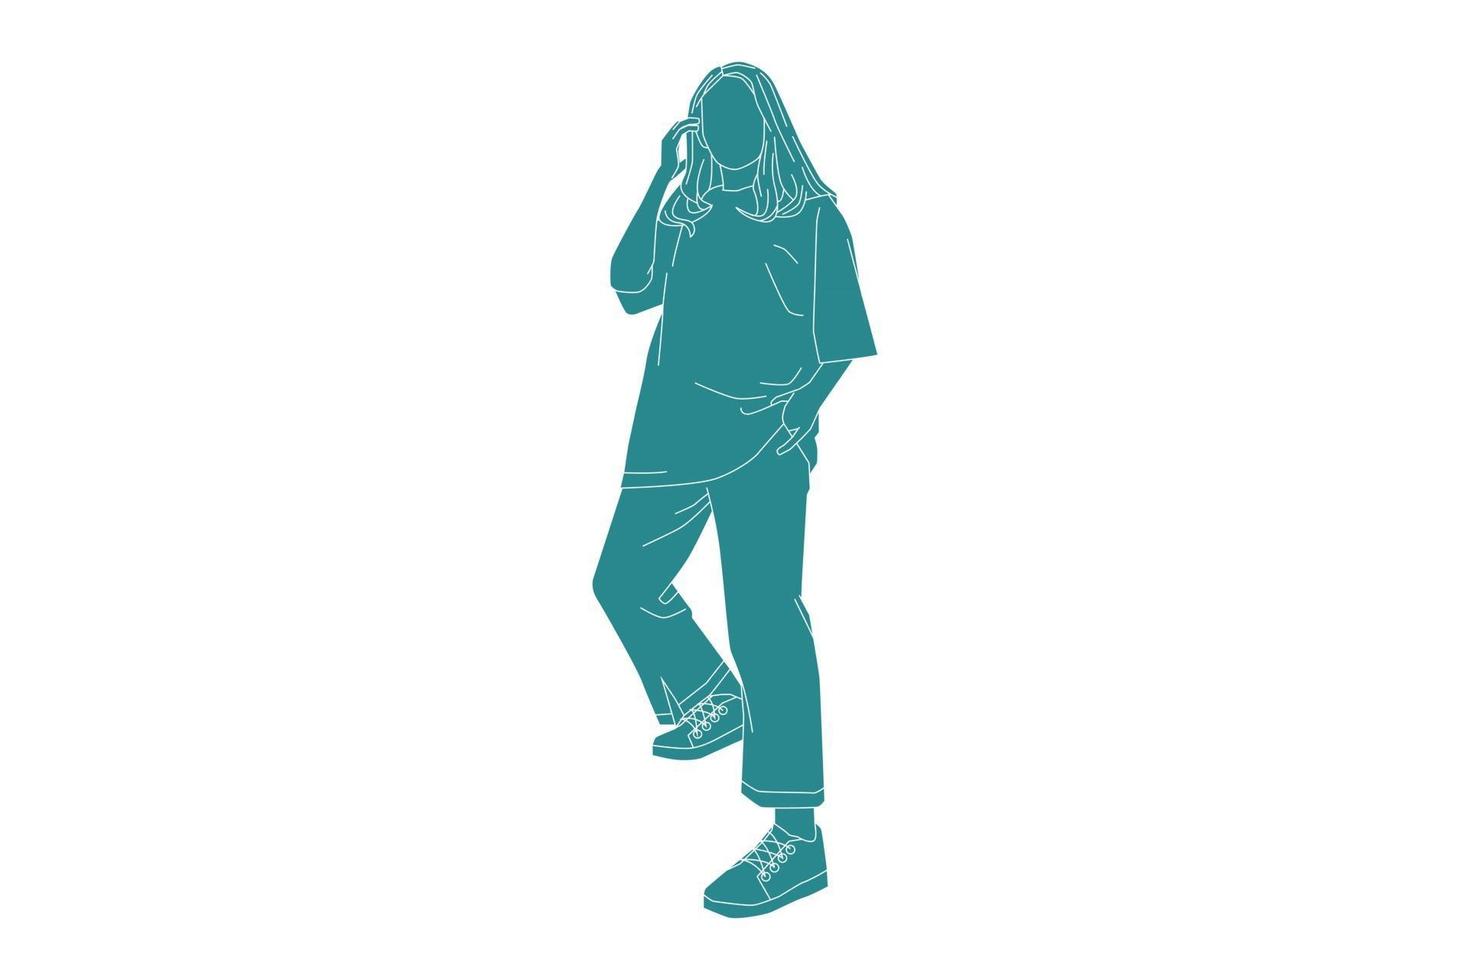 Vektor-Illustration einer lässigen Frau, die in ihrem T-Shirt posiert, flacher Stil mit Umriss vektor